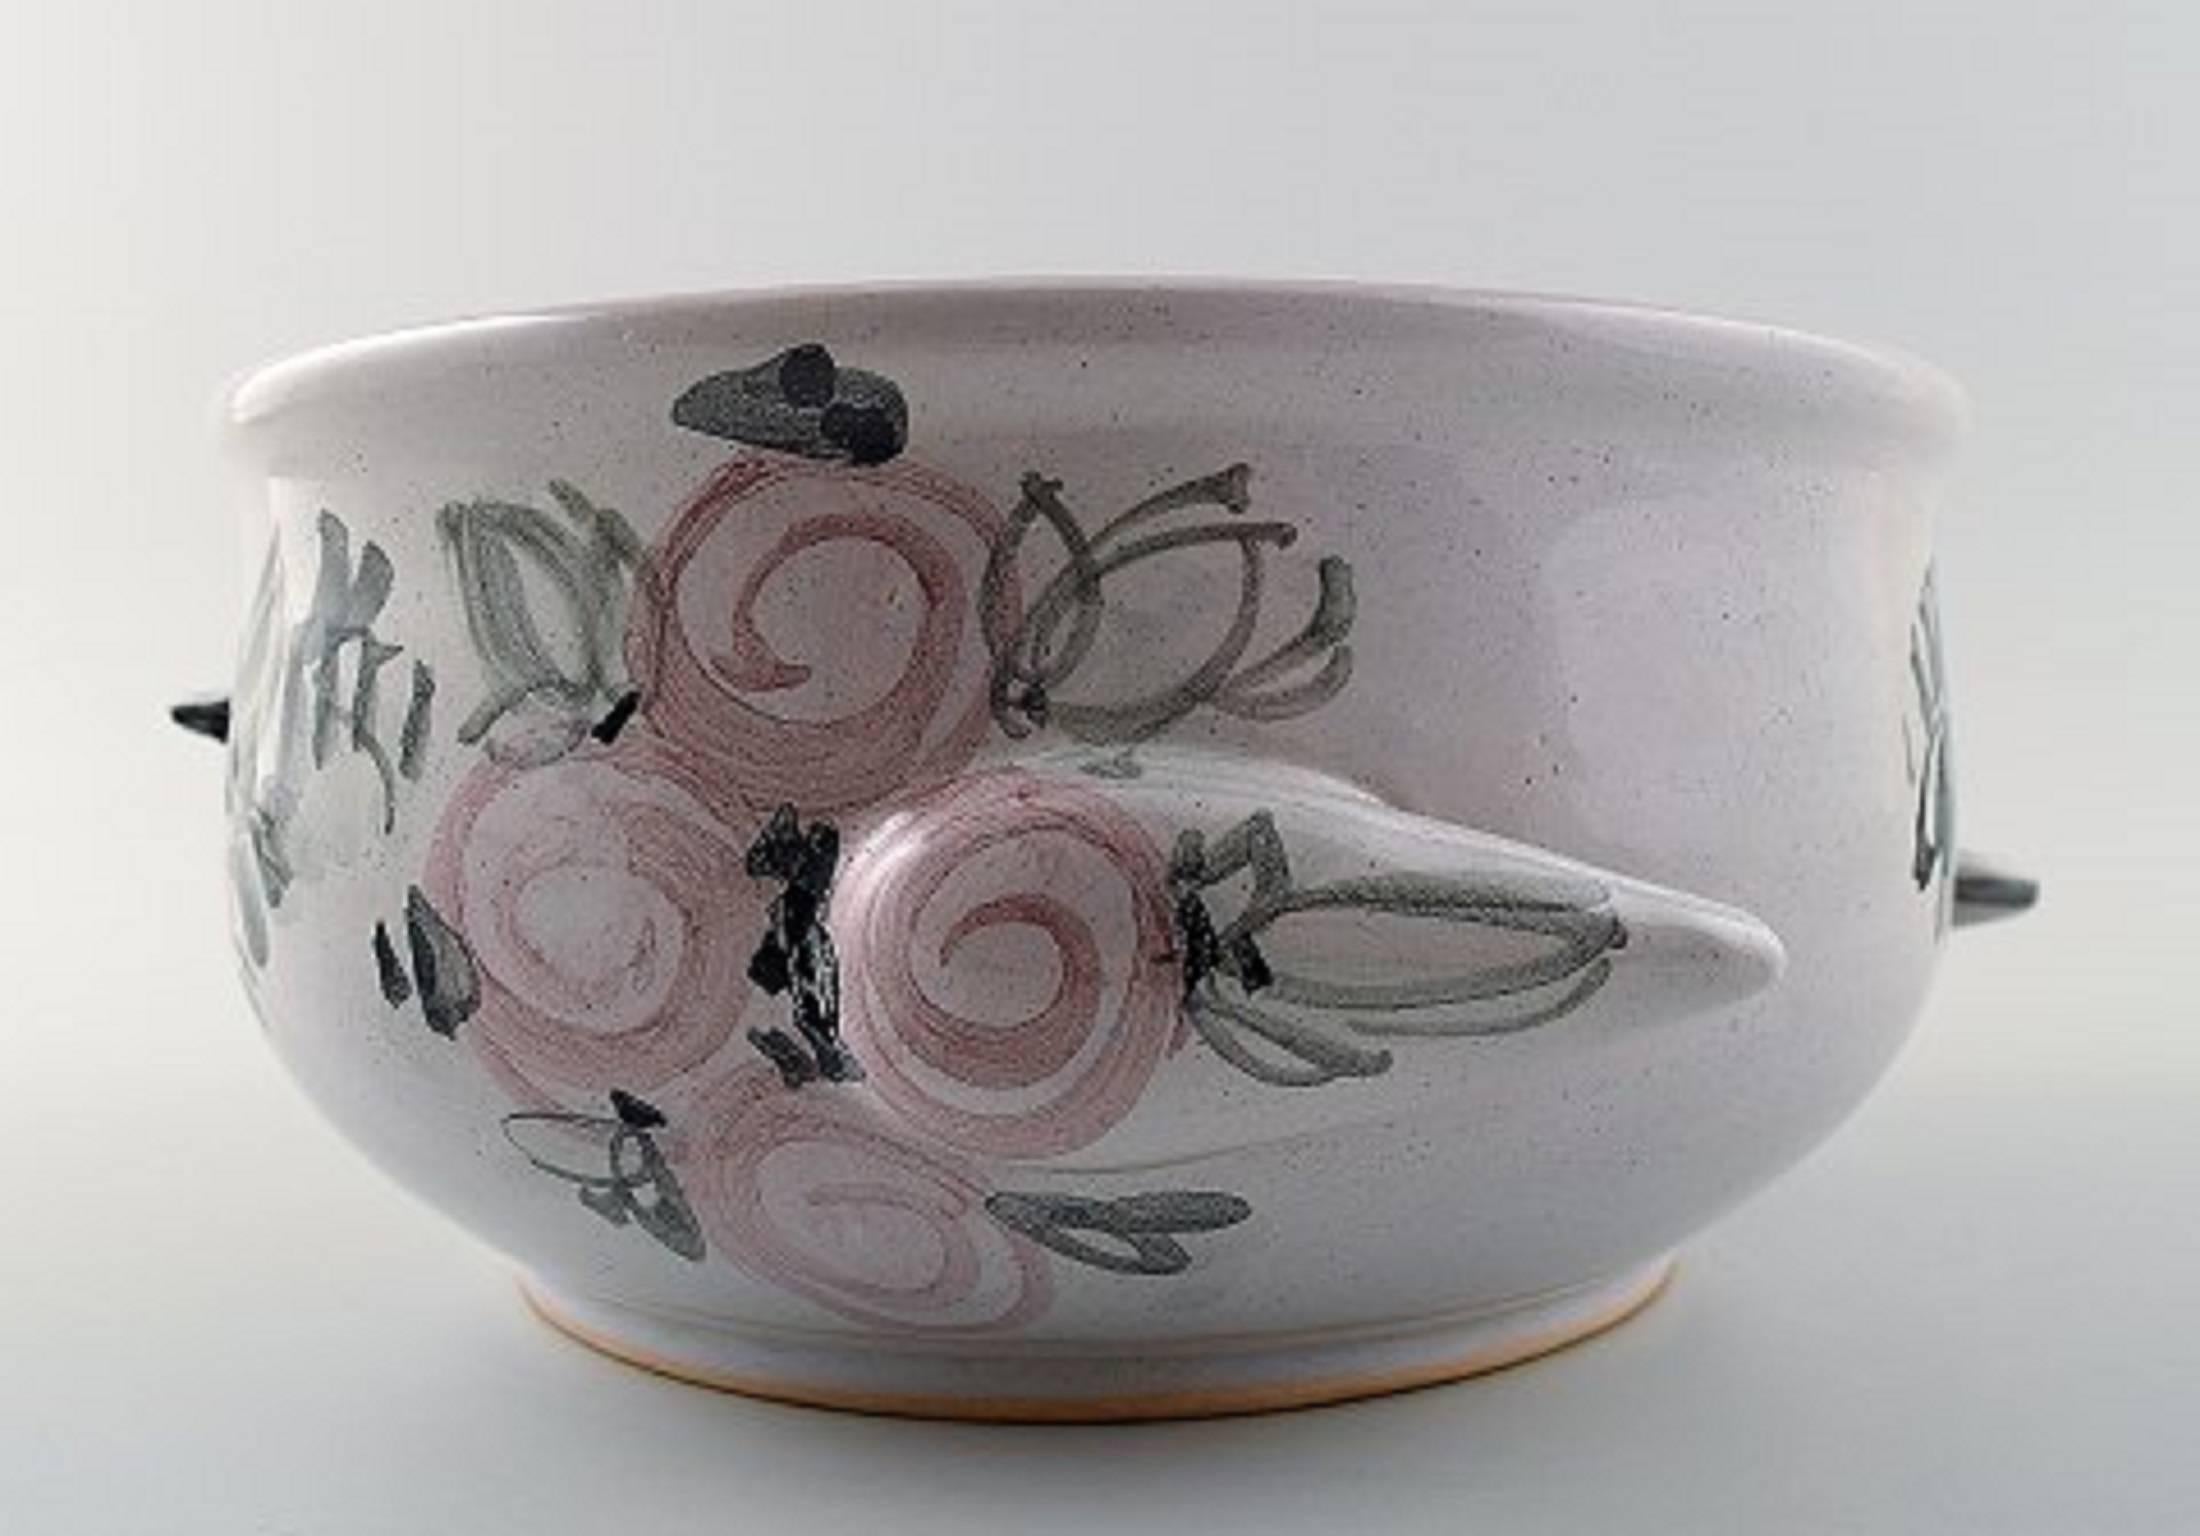 Bjorn Wiinblad einzigartiger Blumentopf aus Keramik, rosa und grau glasiert.
Maße: 22 cm x 9,5cm. Modellnummer V.68.
Datiert: 1976.
In perfektem Zustand.